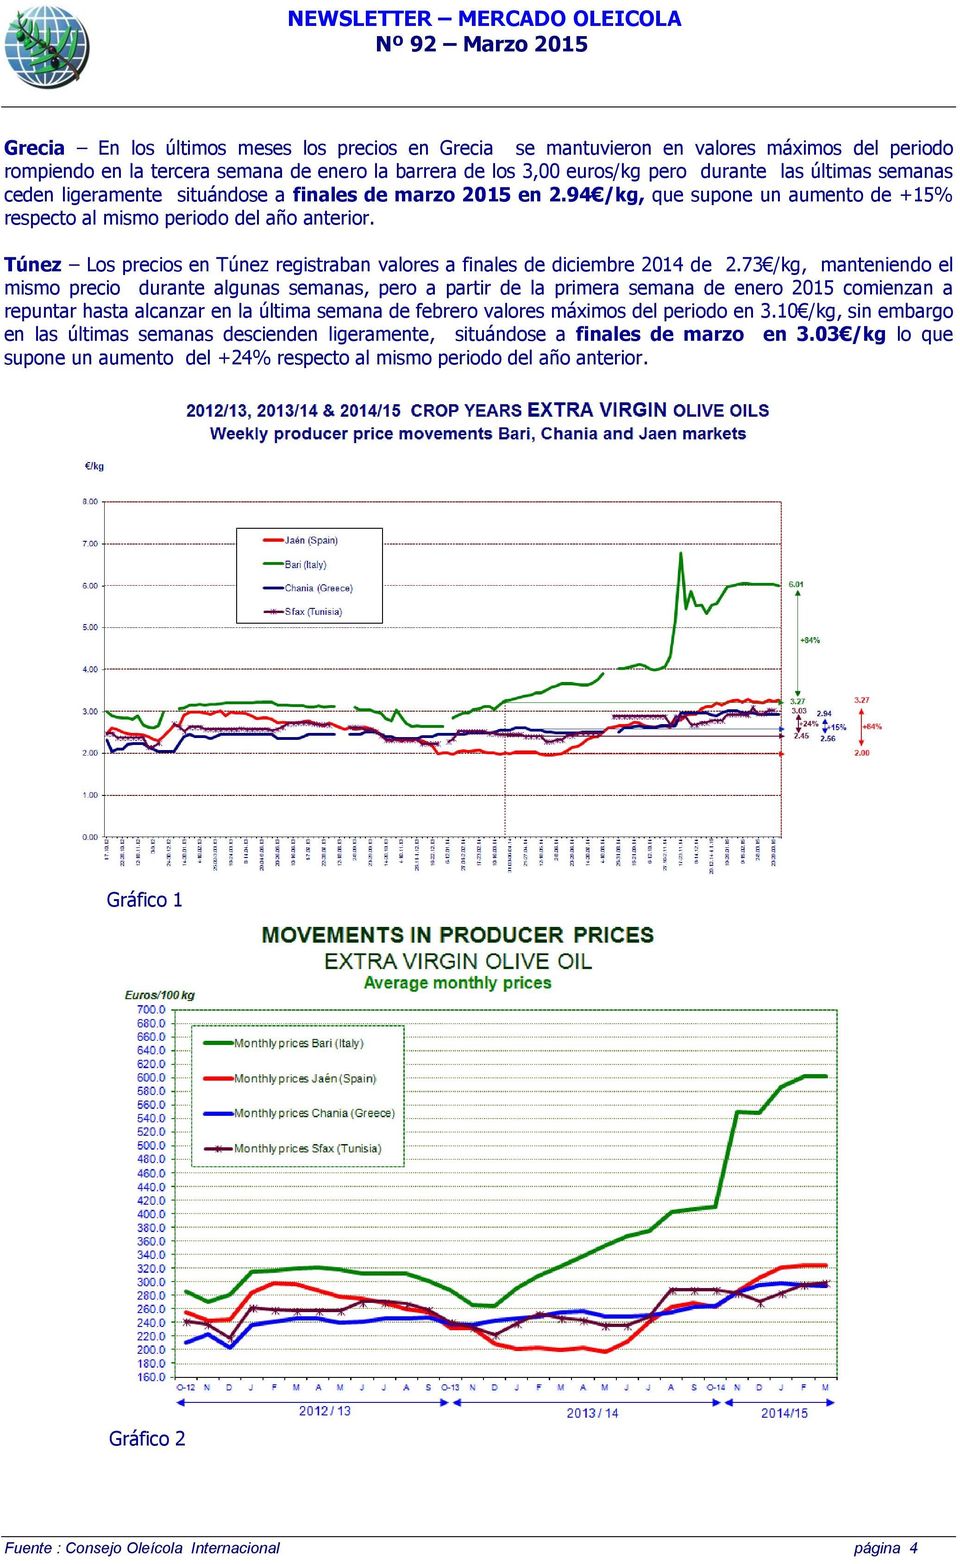 Túnez Los precios en Túnez registraban valores a finales de diciembre 2014 de 2.